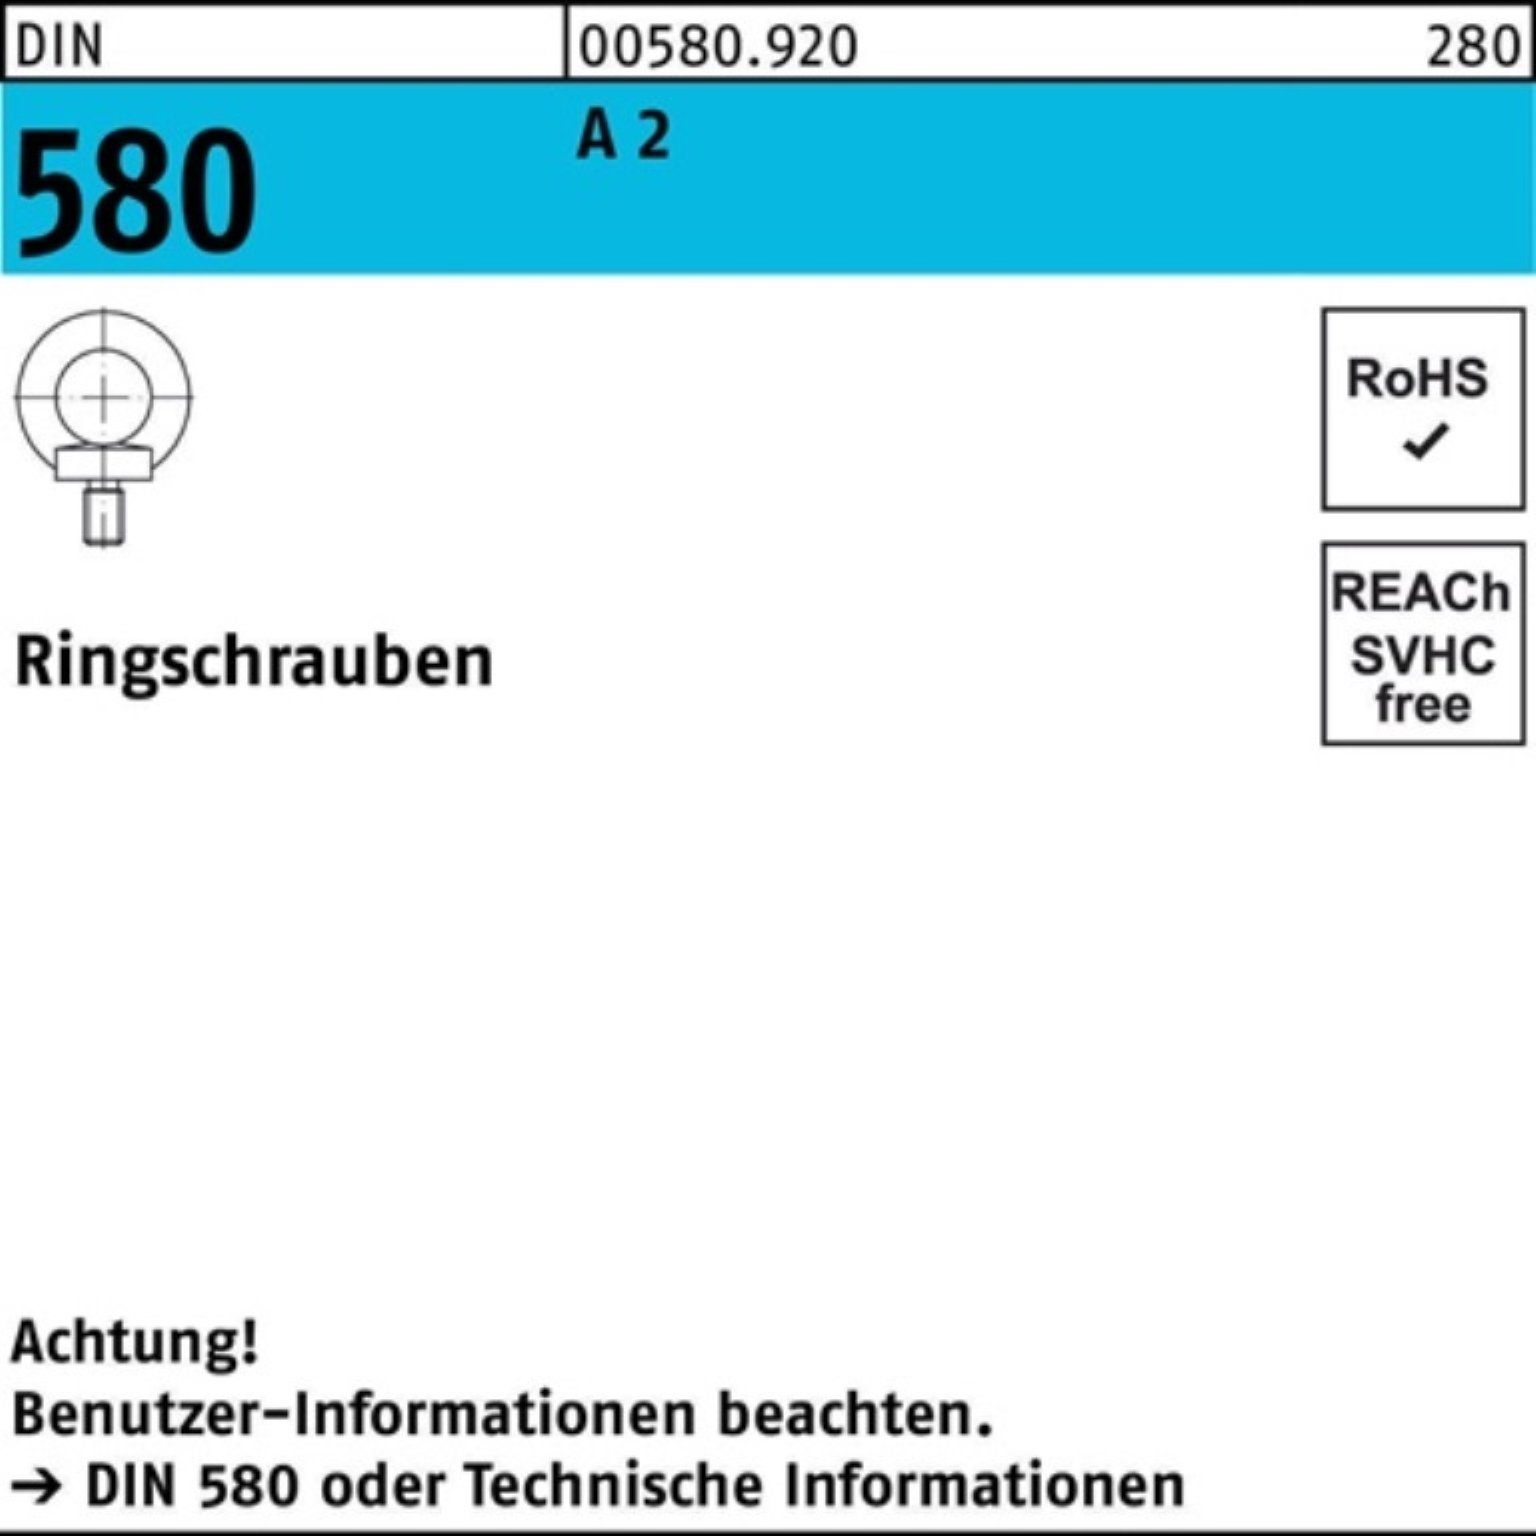 Reyher Schraube 100er Pack Ringschraube DIN 580 M12 A 2 1 Stück DIN 580 A 2 Ringschra